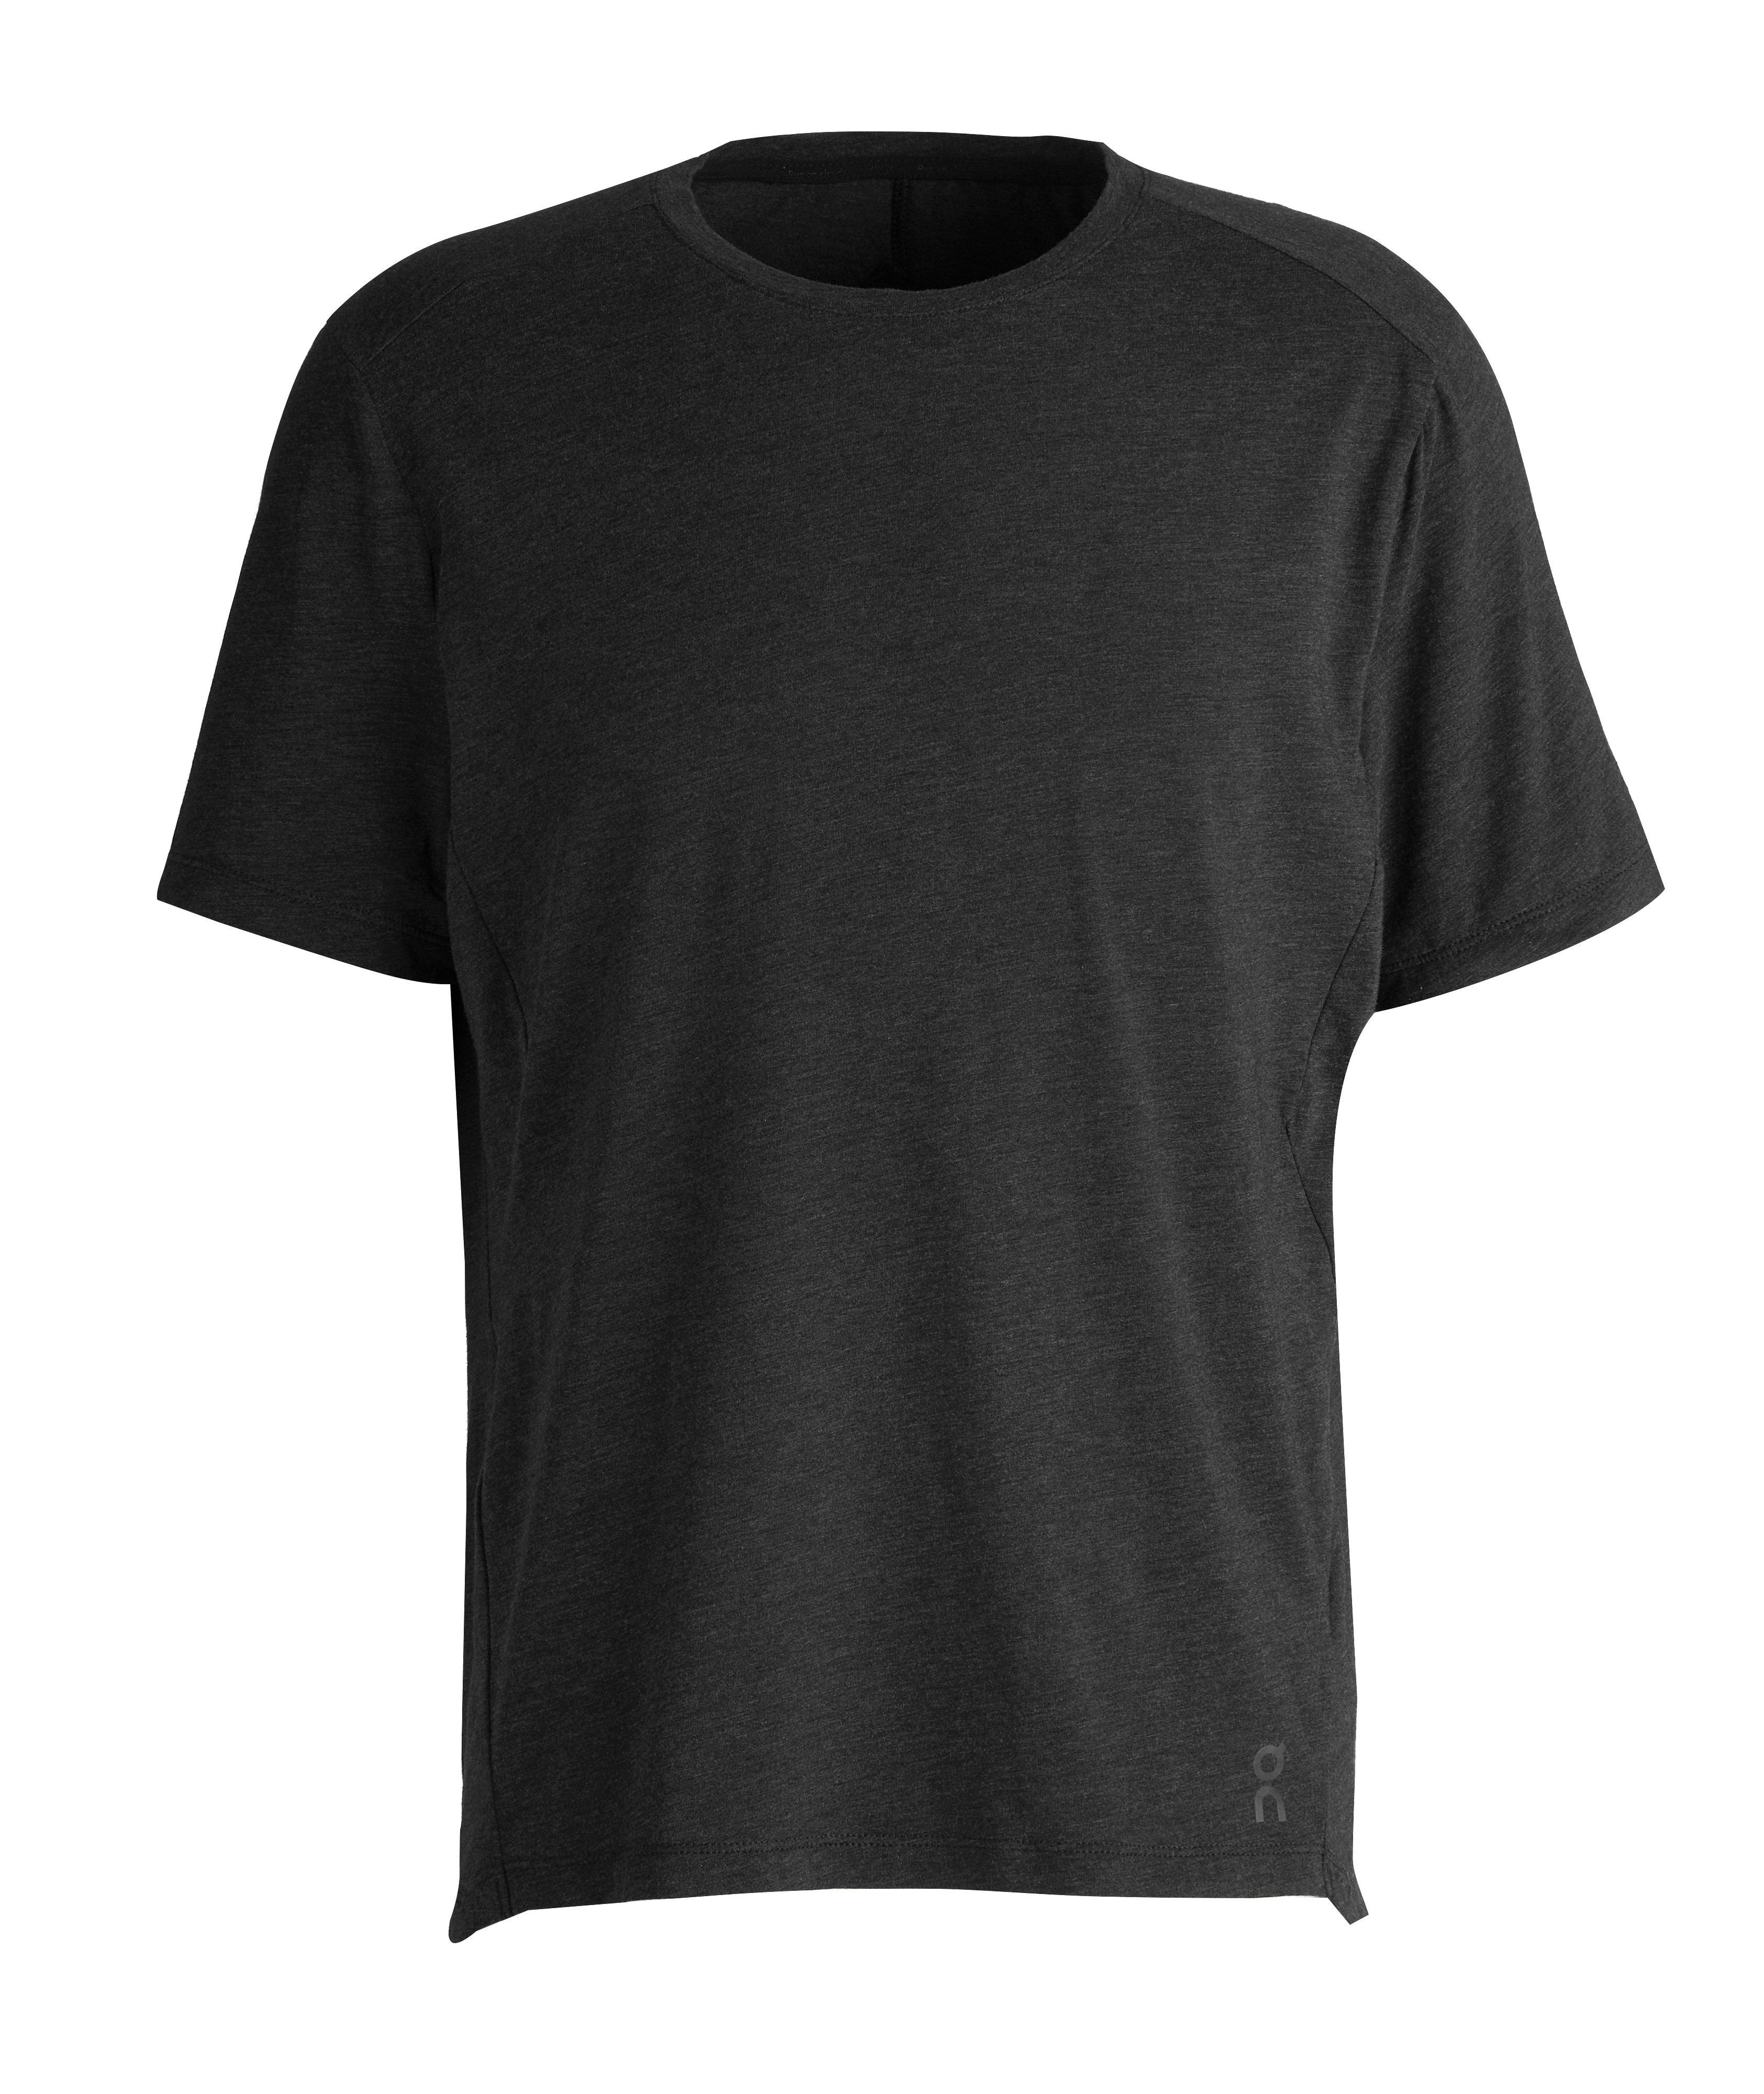 Cotton-Blend Active T-Shirt image 0